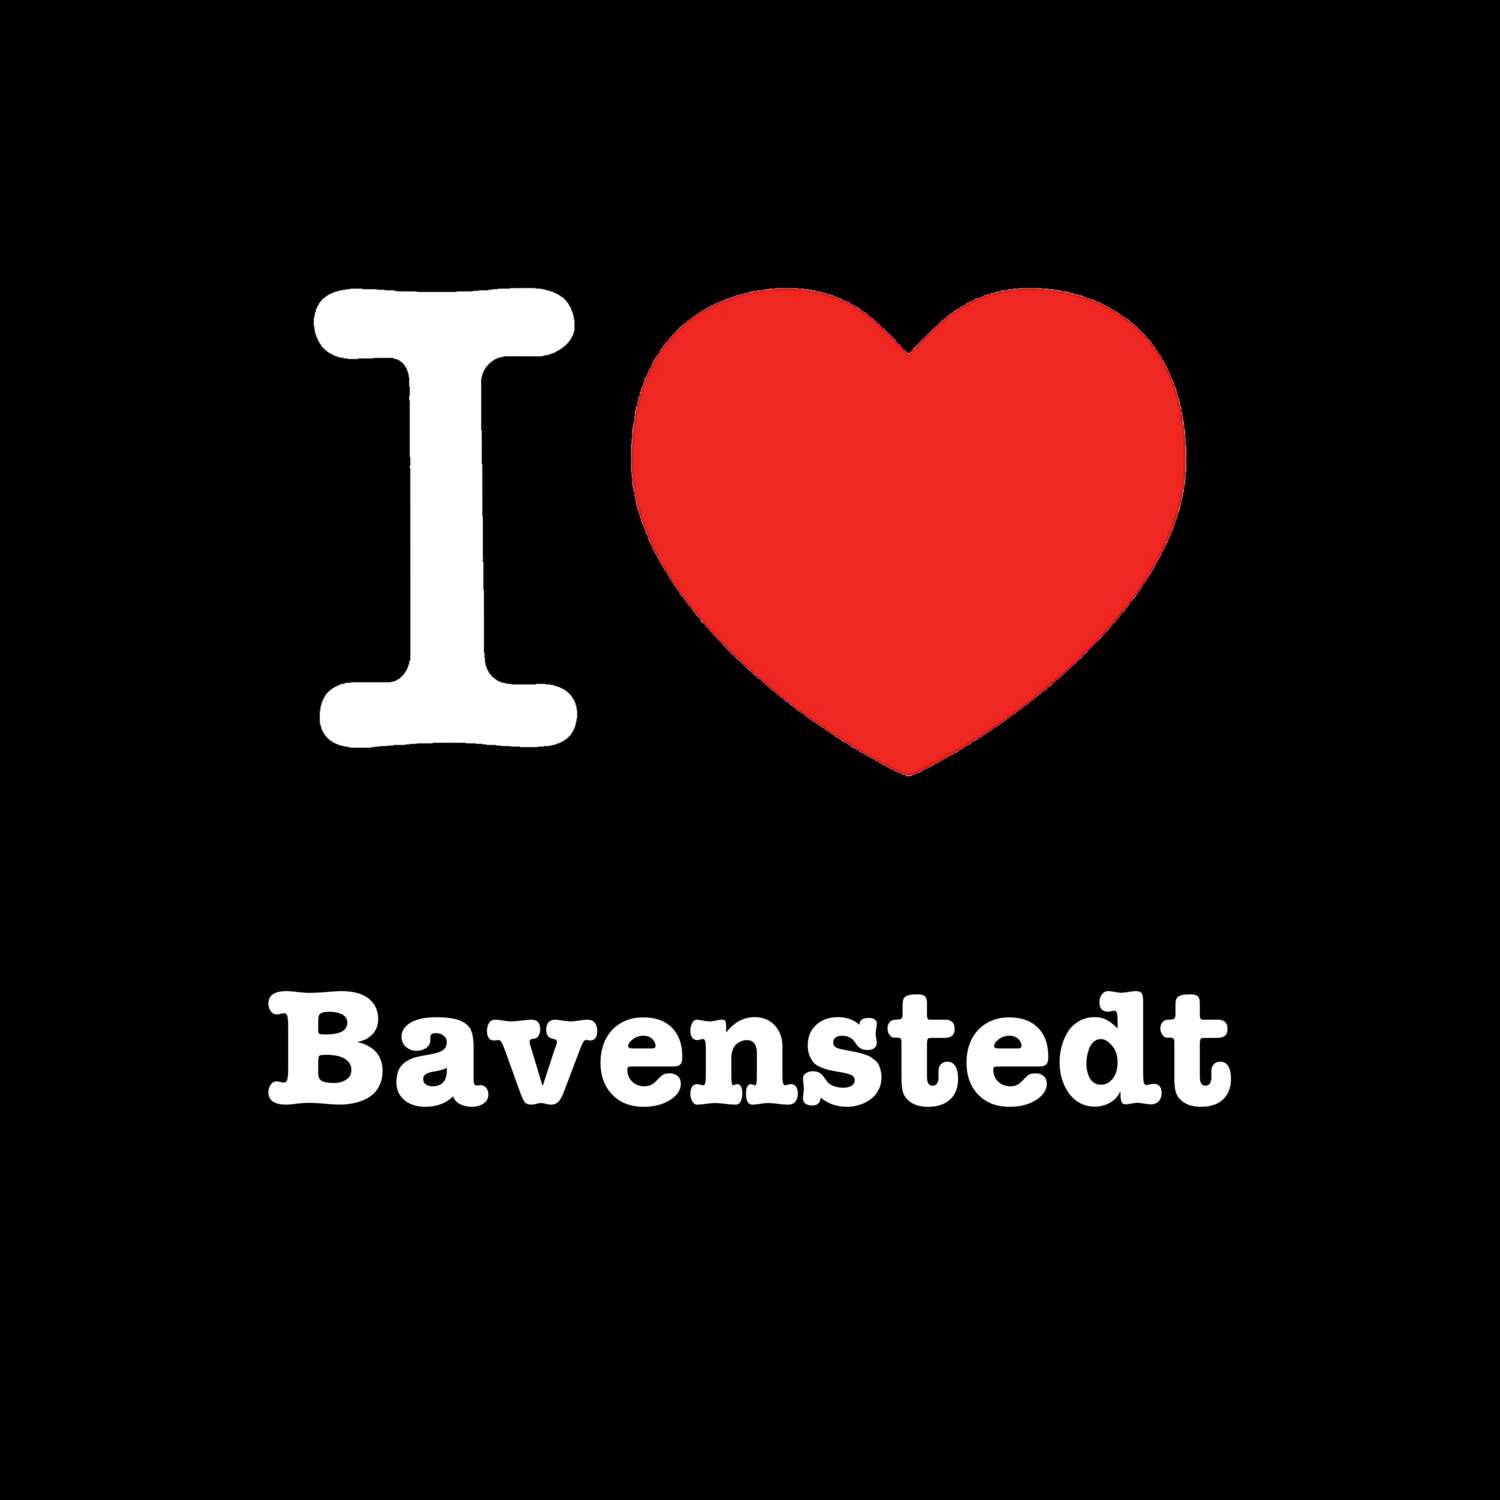 Bavenstedt T-Shirt »I love«